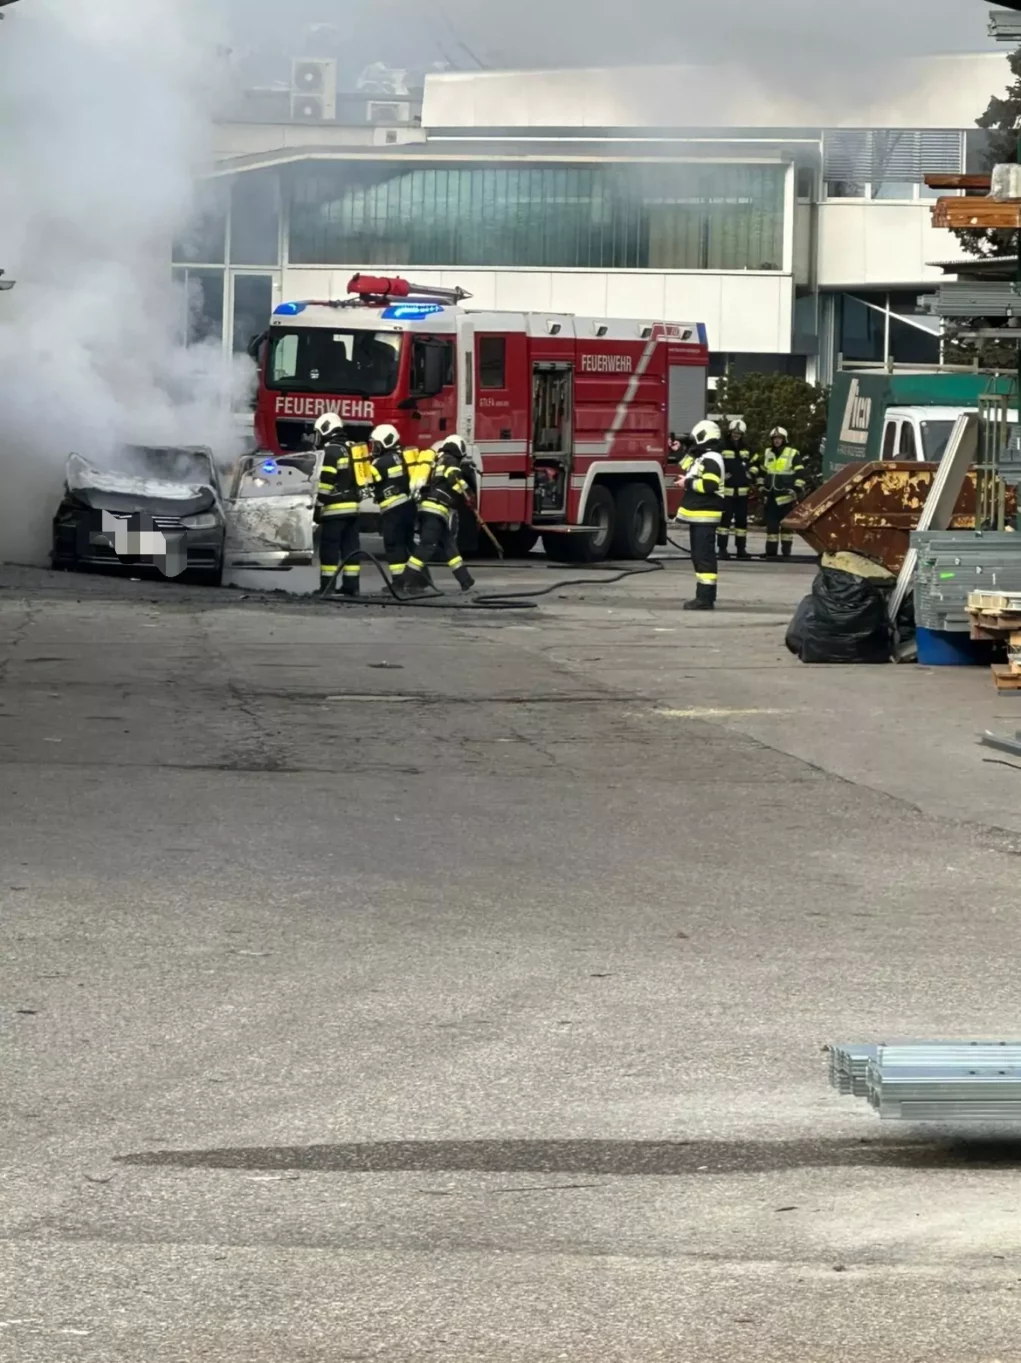 Foto in Beitrag von 5min.at: Zu sehen ist das brennende Auto. Sehr viel Rauch kommt aus dem Fahrzeug.